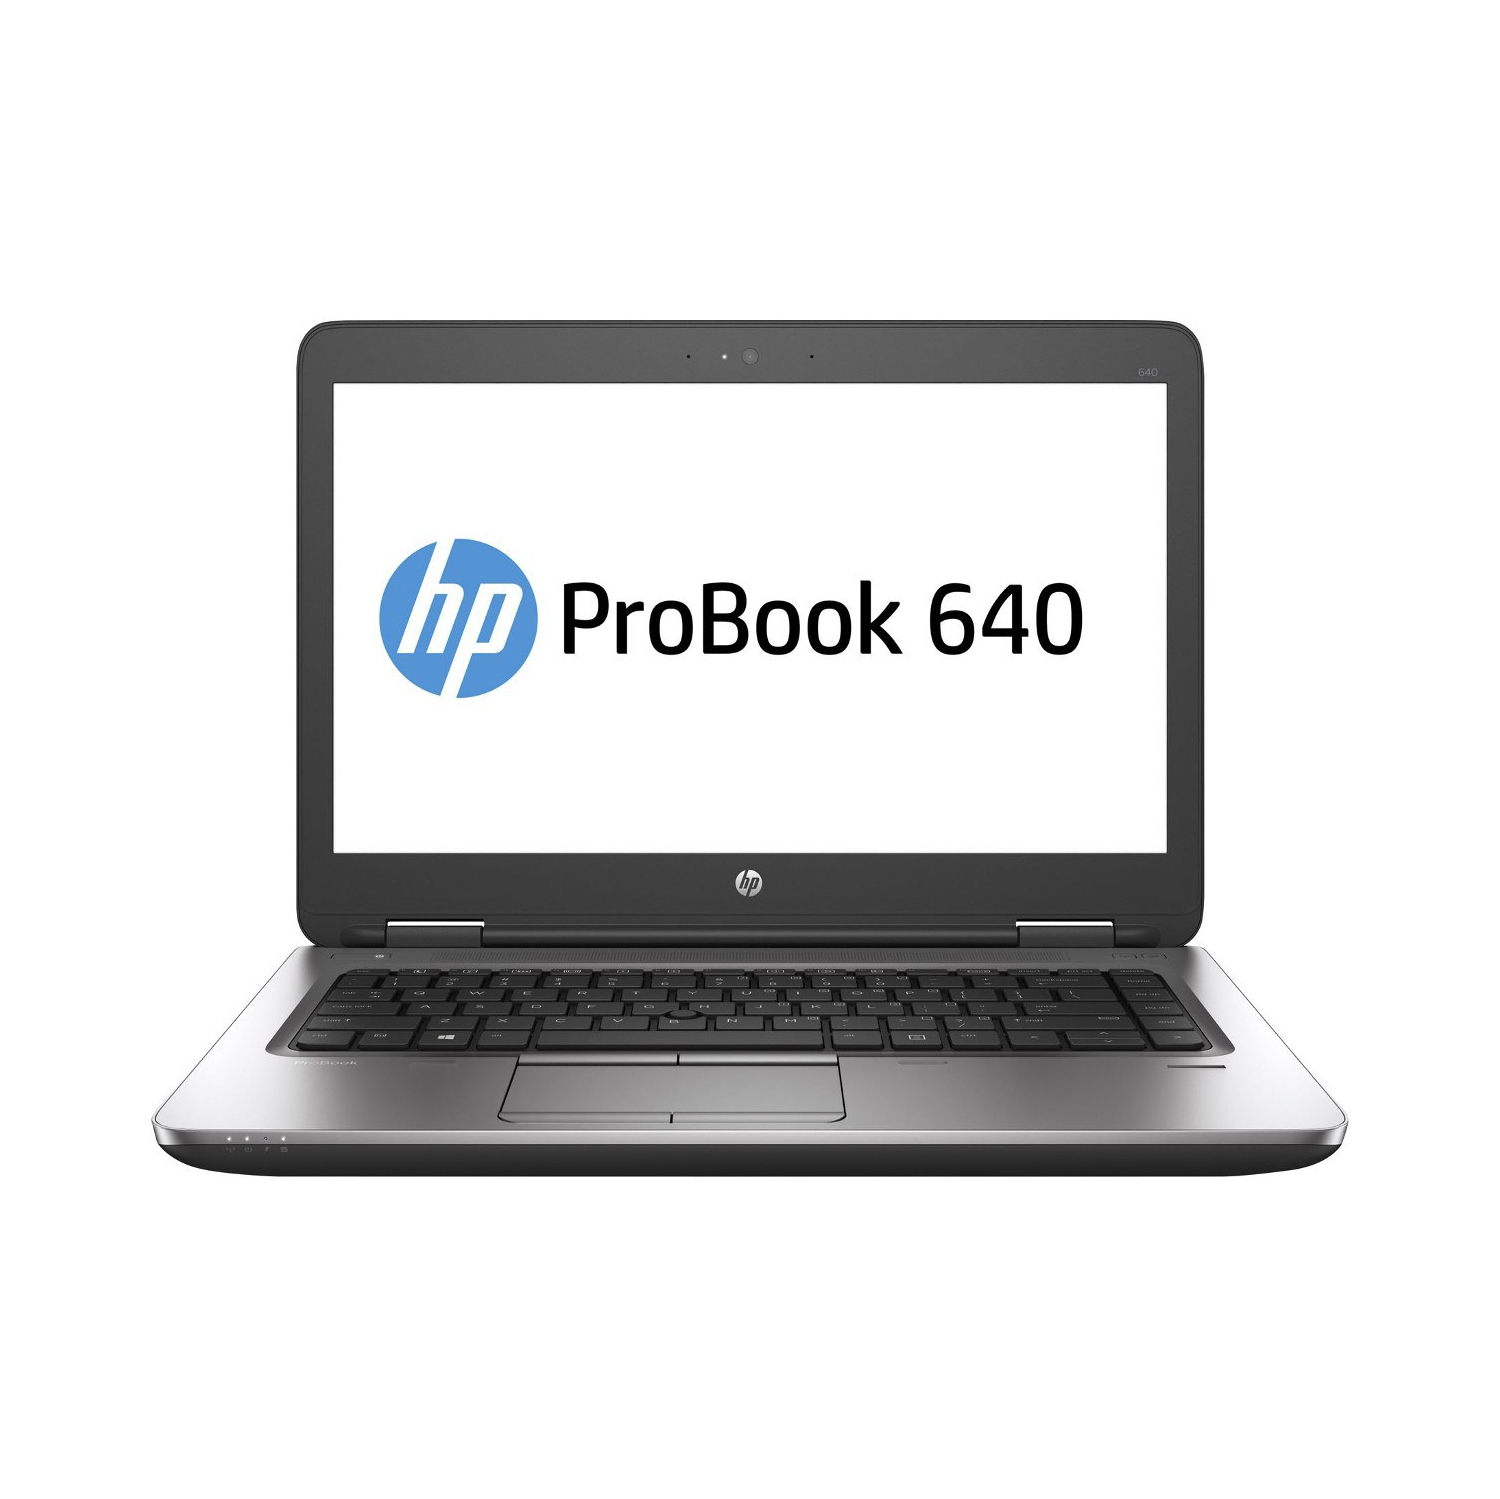 Refurbished (Excellent) - HP ProBook 640 G2 14" Laptop, Intel Core i7 6600U up to 3.4 GHz, 8G DDR4, 120G SSD, VGA, DP, Win10P64 (EN/FR/ES)